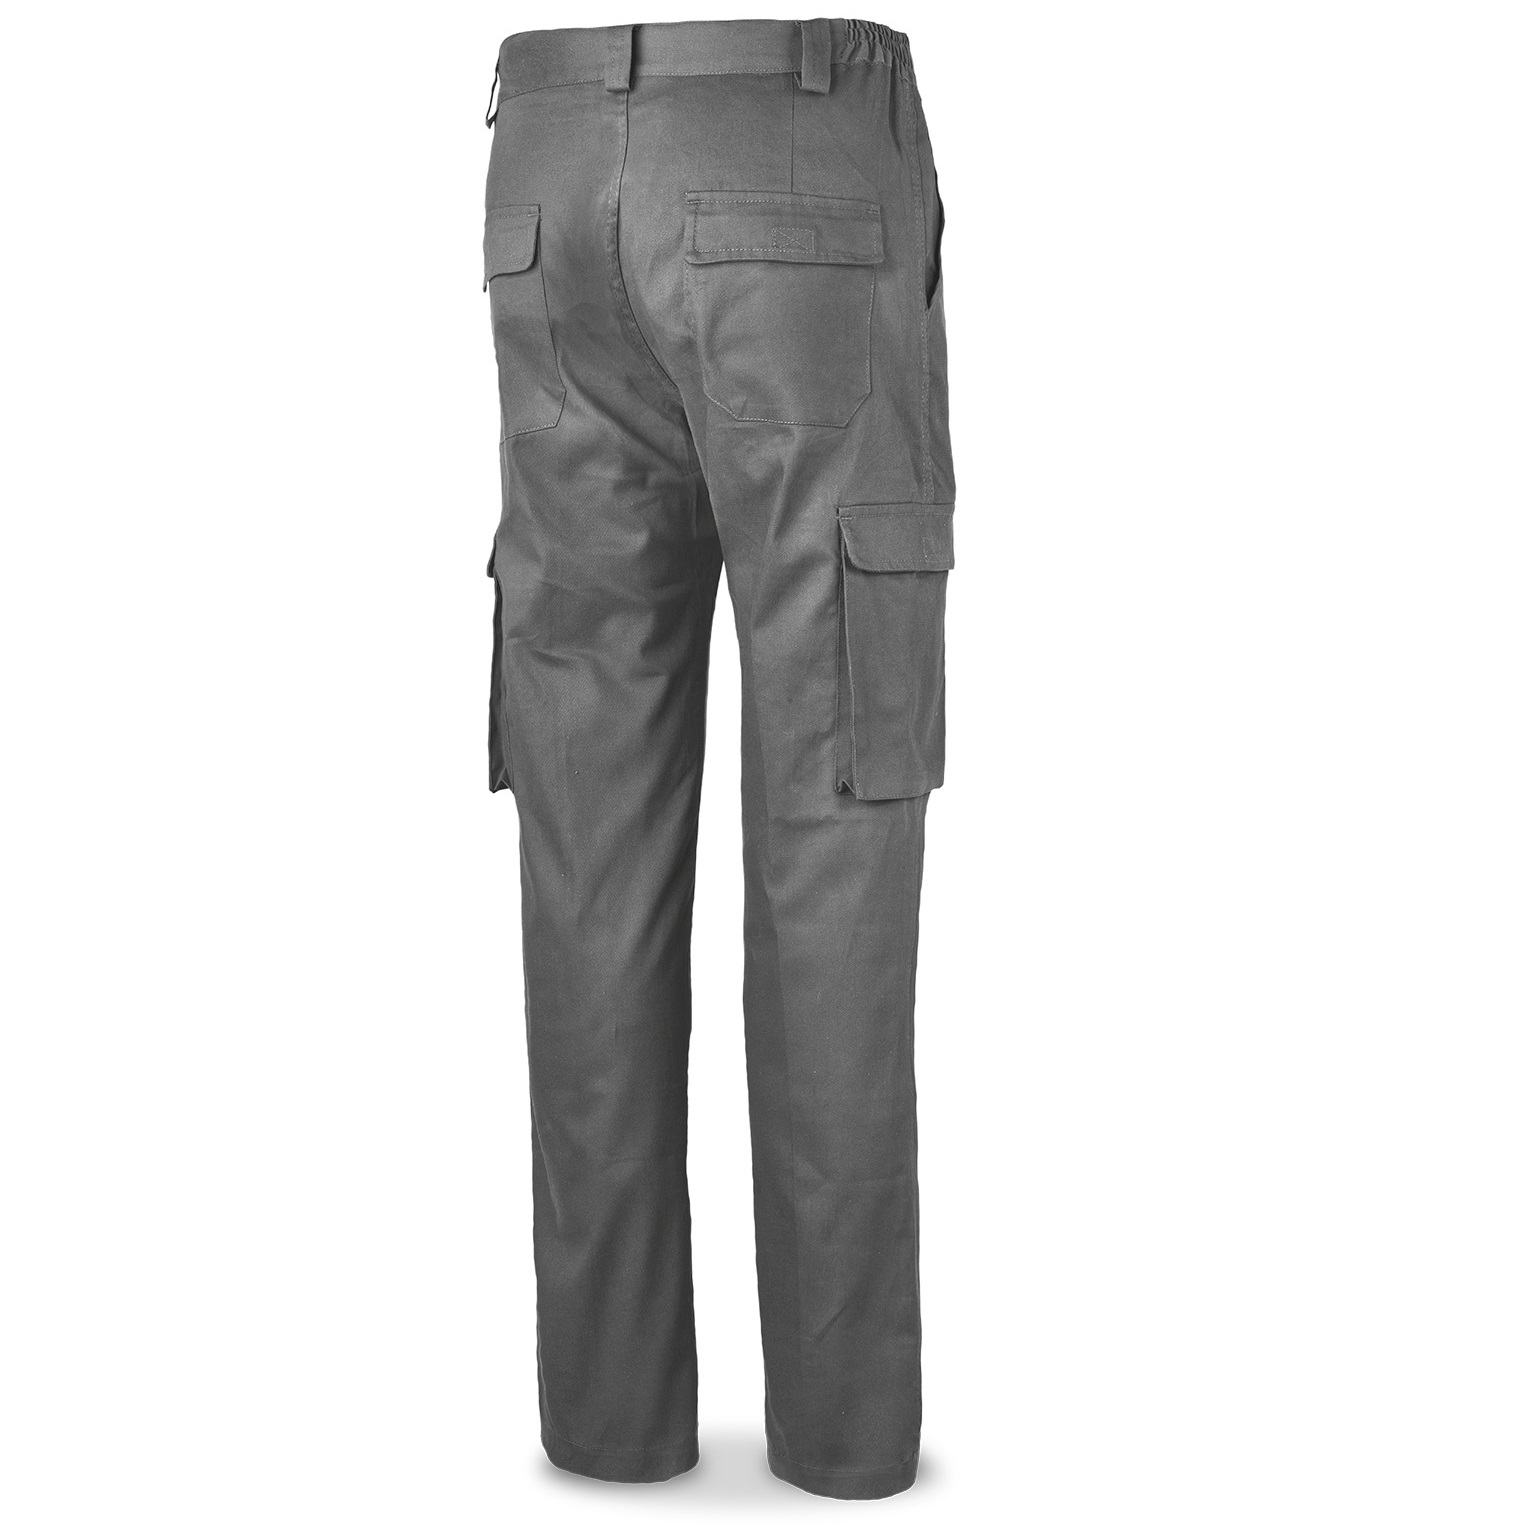 Pantalón elástico multibolsillos reforzado gris